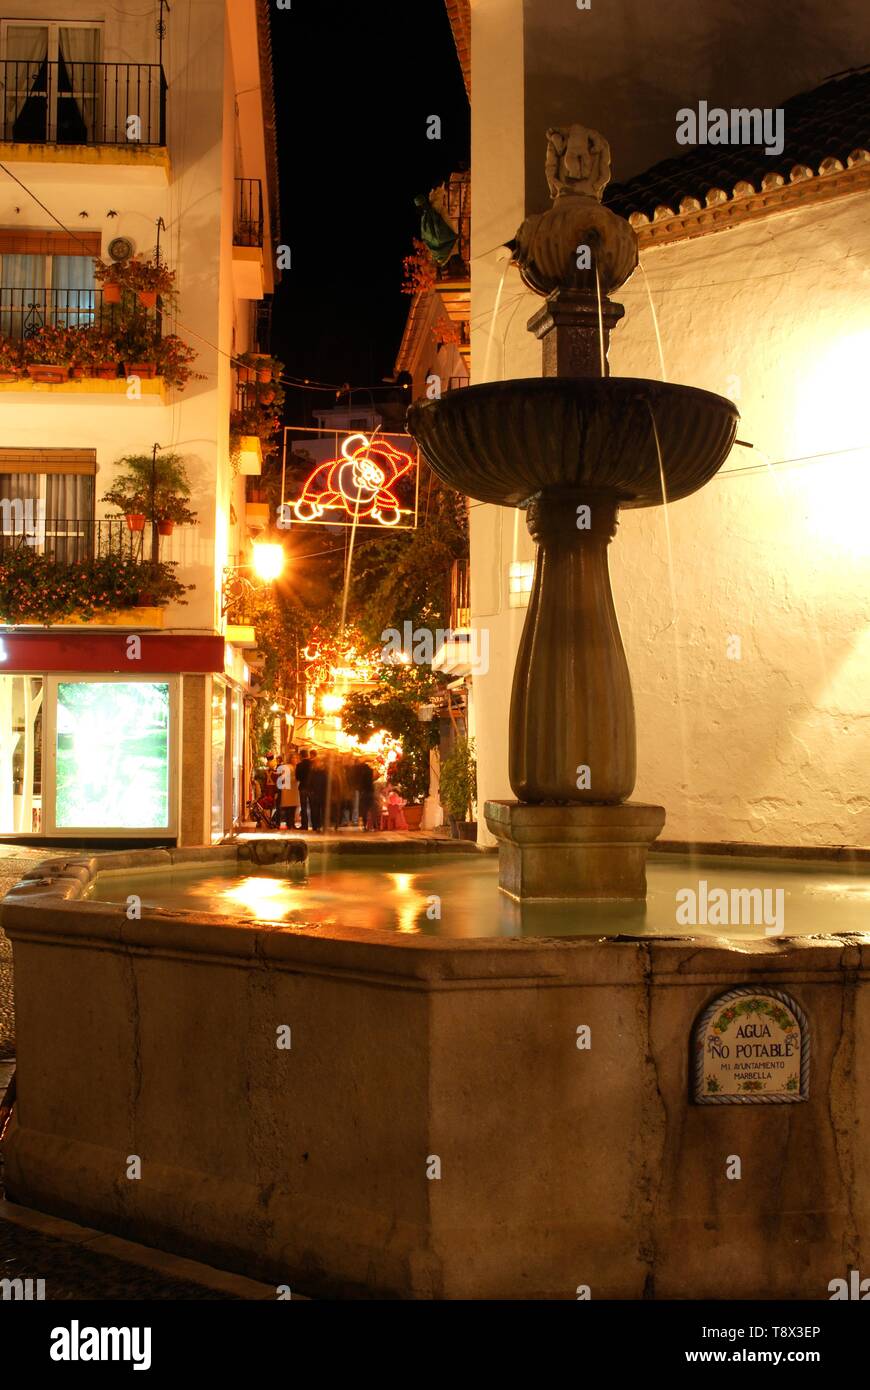 Fontaine en pierre et des décorations de Noël dans une ville la nuit, Marbella, Costa del Sol, la province de Malaga, Andalousie, espagne. Banque D'Images